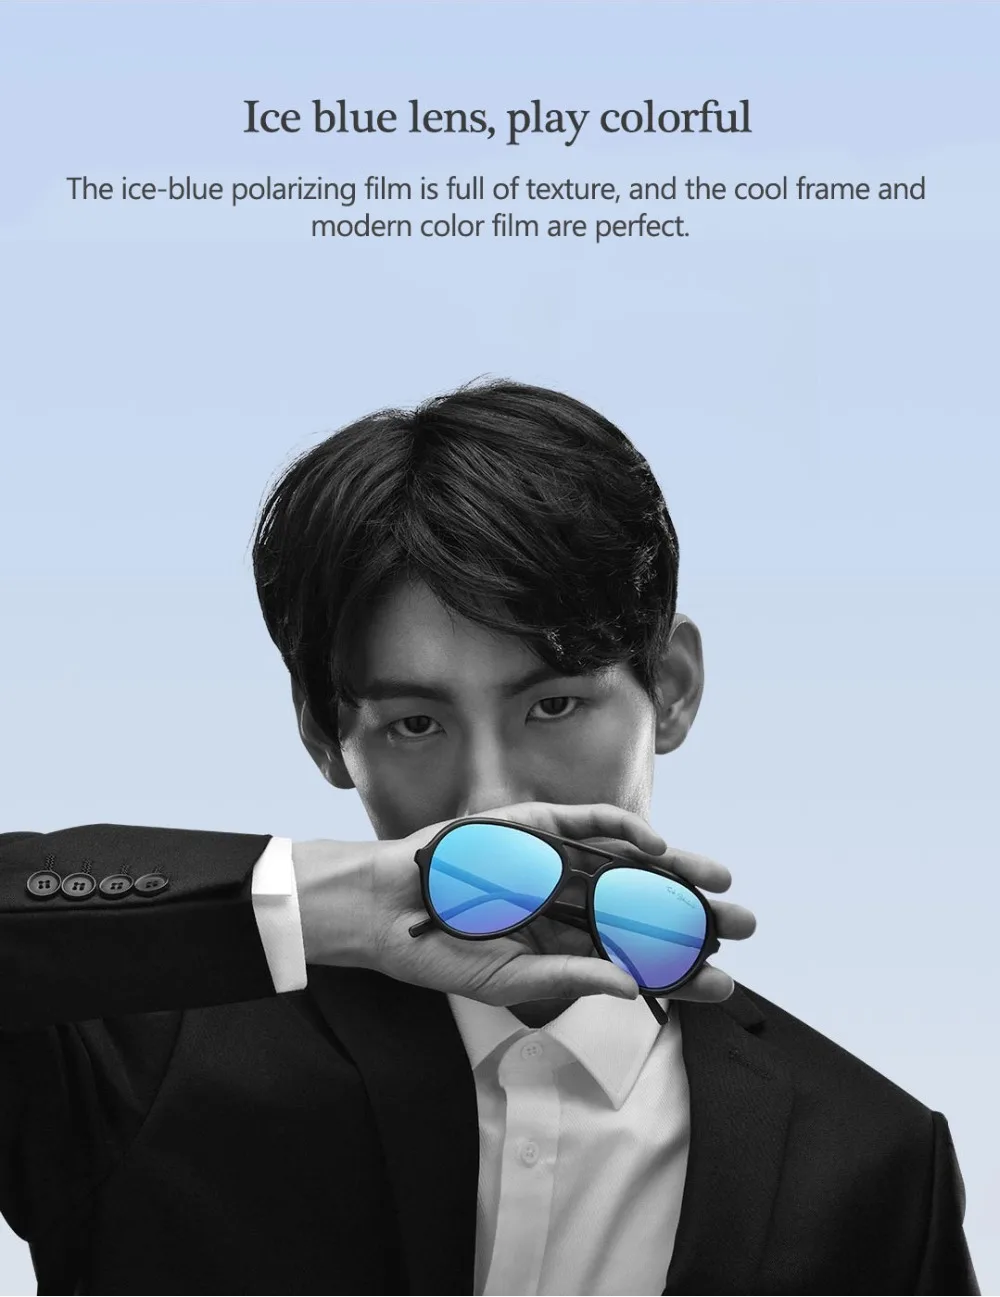 Xiaomi Ice Blue очки TS бренд TAC поляризованные солнцезащитные очки Авиатор из нержавеющей стали линзы УФ-защита для путешествий на открытом воздухе для мужчин и женщин